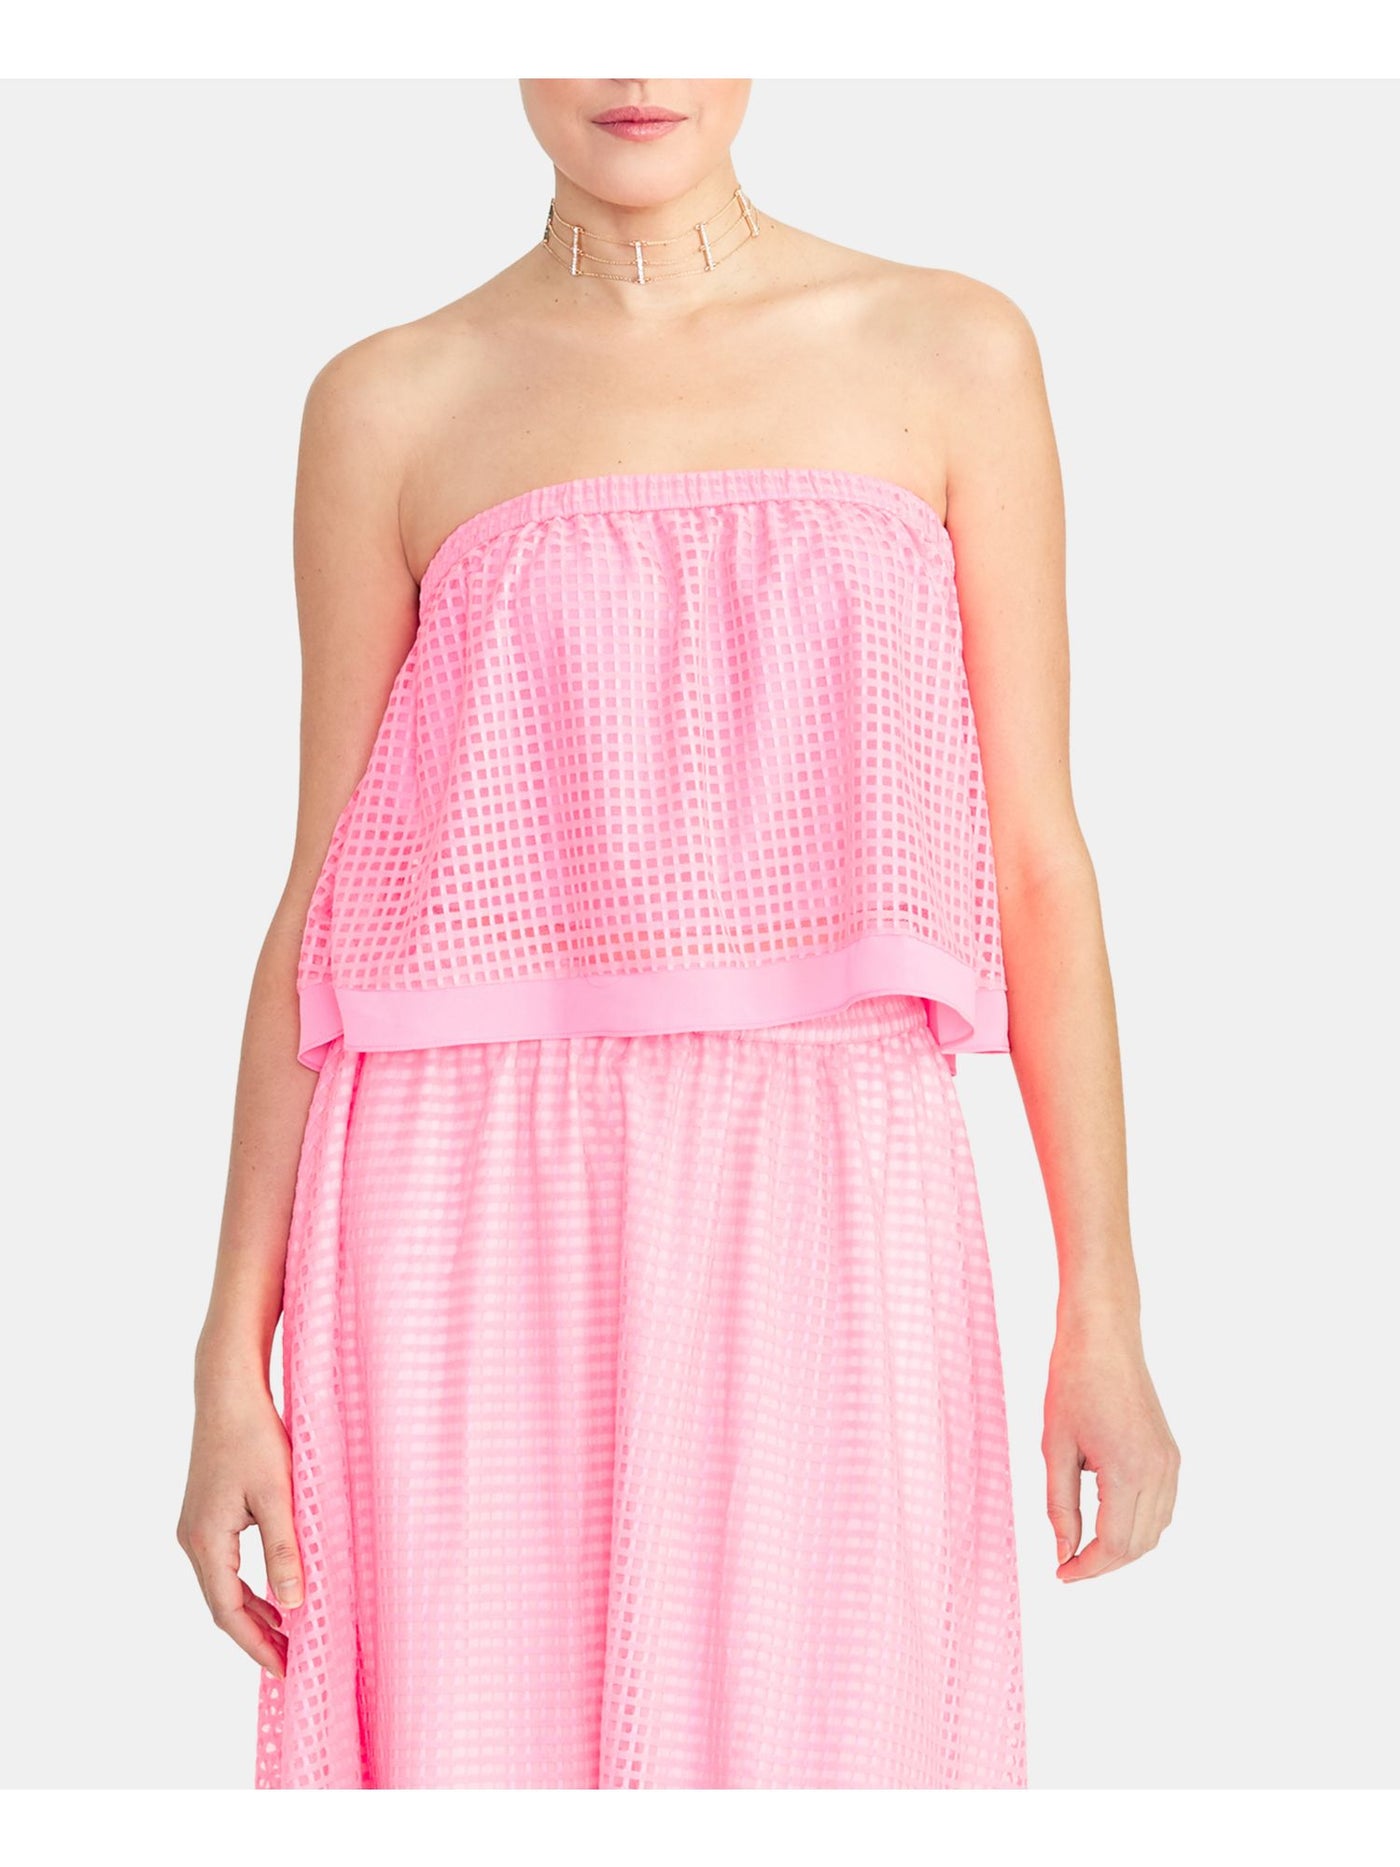 RACHEL ROY Womens Pink Sleeveless Strapless Crop Top XL